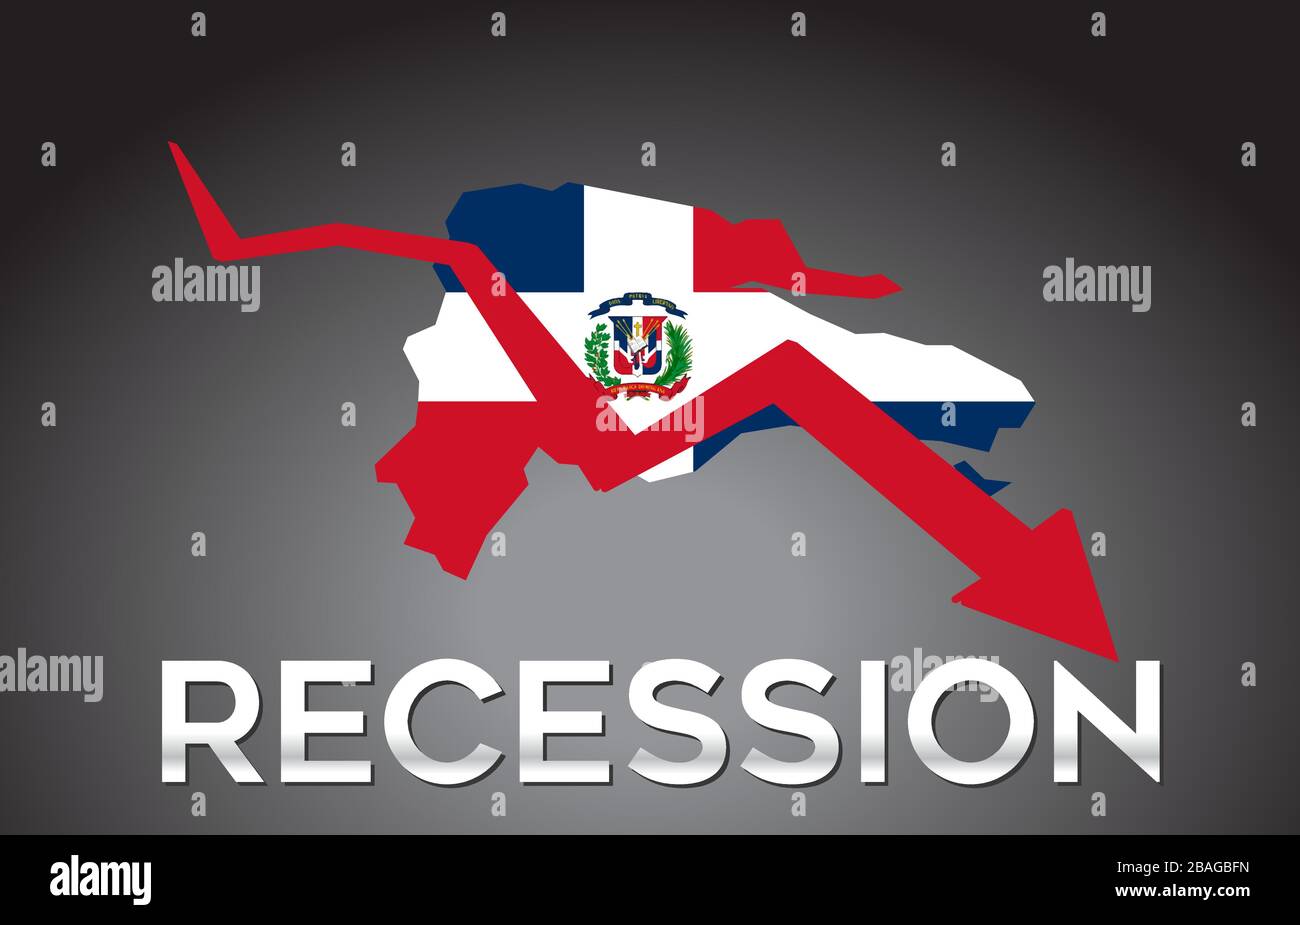 Mappa della Repubblica Dominicana recessione crisi economica concetto creativo con economico Crash Arrow Vector Illustration Design. Illustrazione Vettoriale